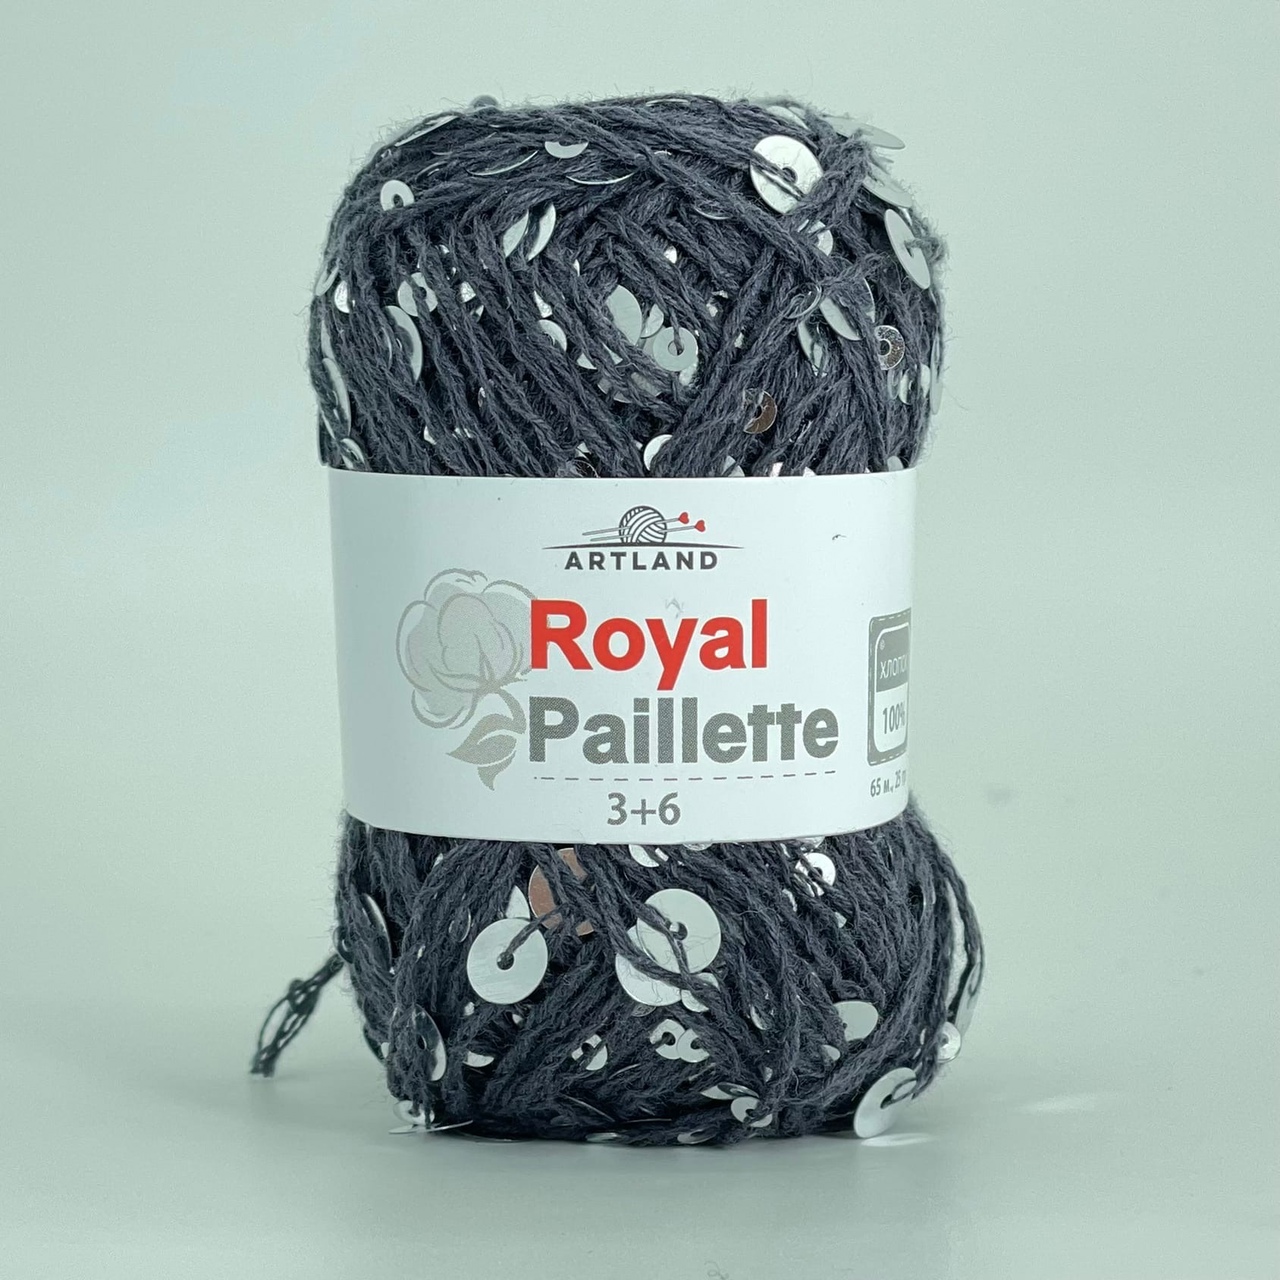 Artland Royal Paillette       -    